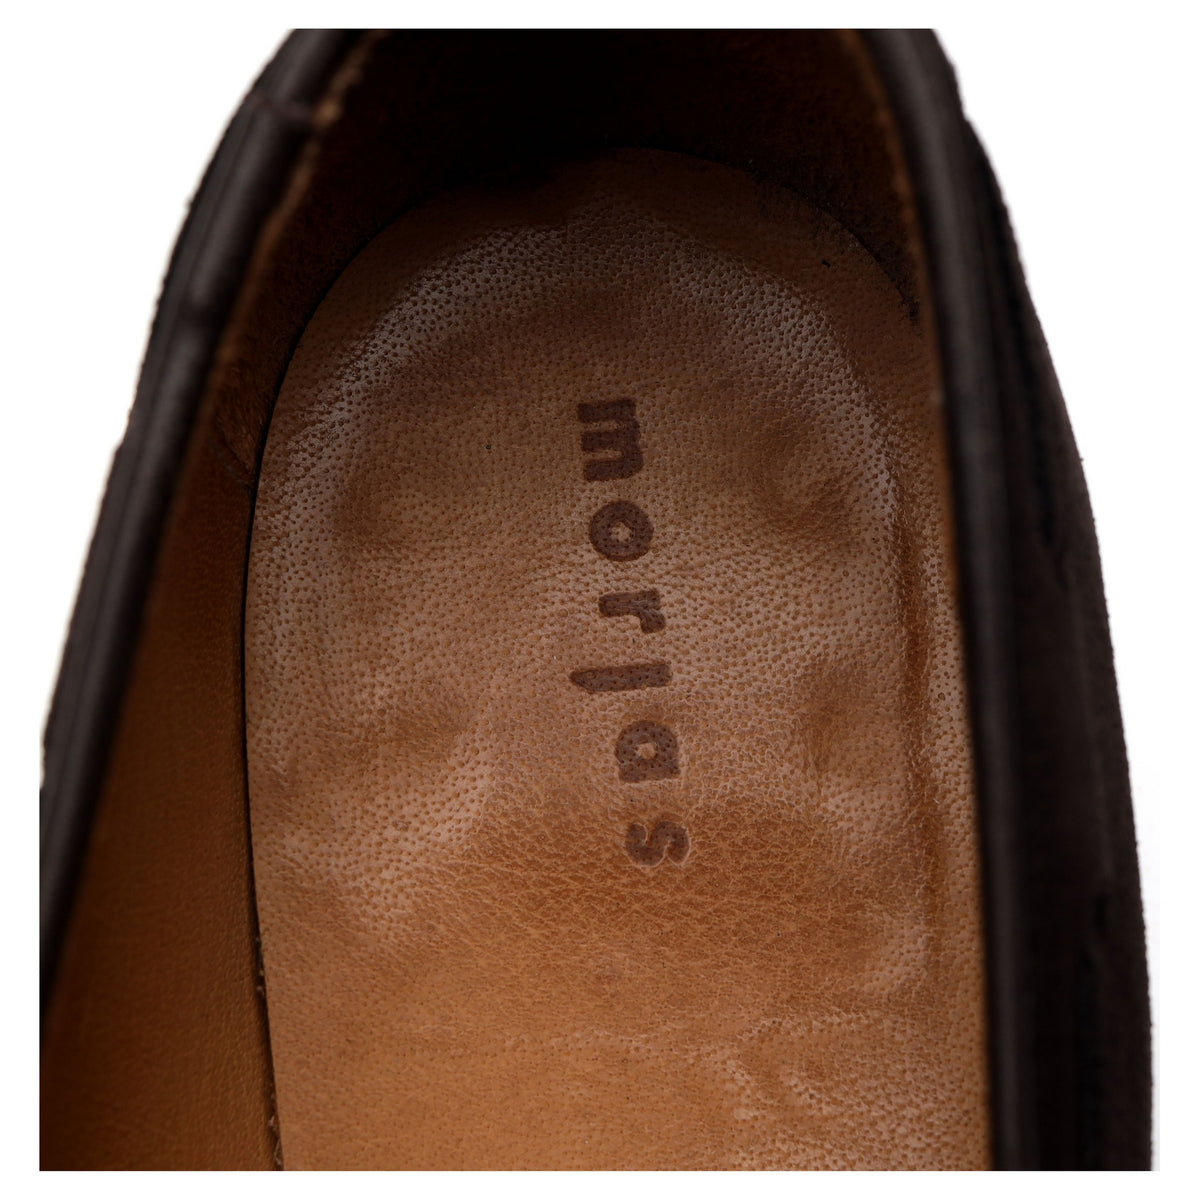 Dark Brown Tassel Loafers UK 8.5